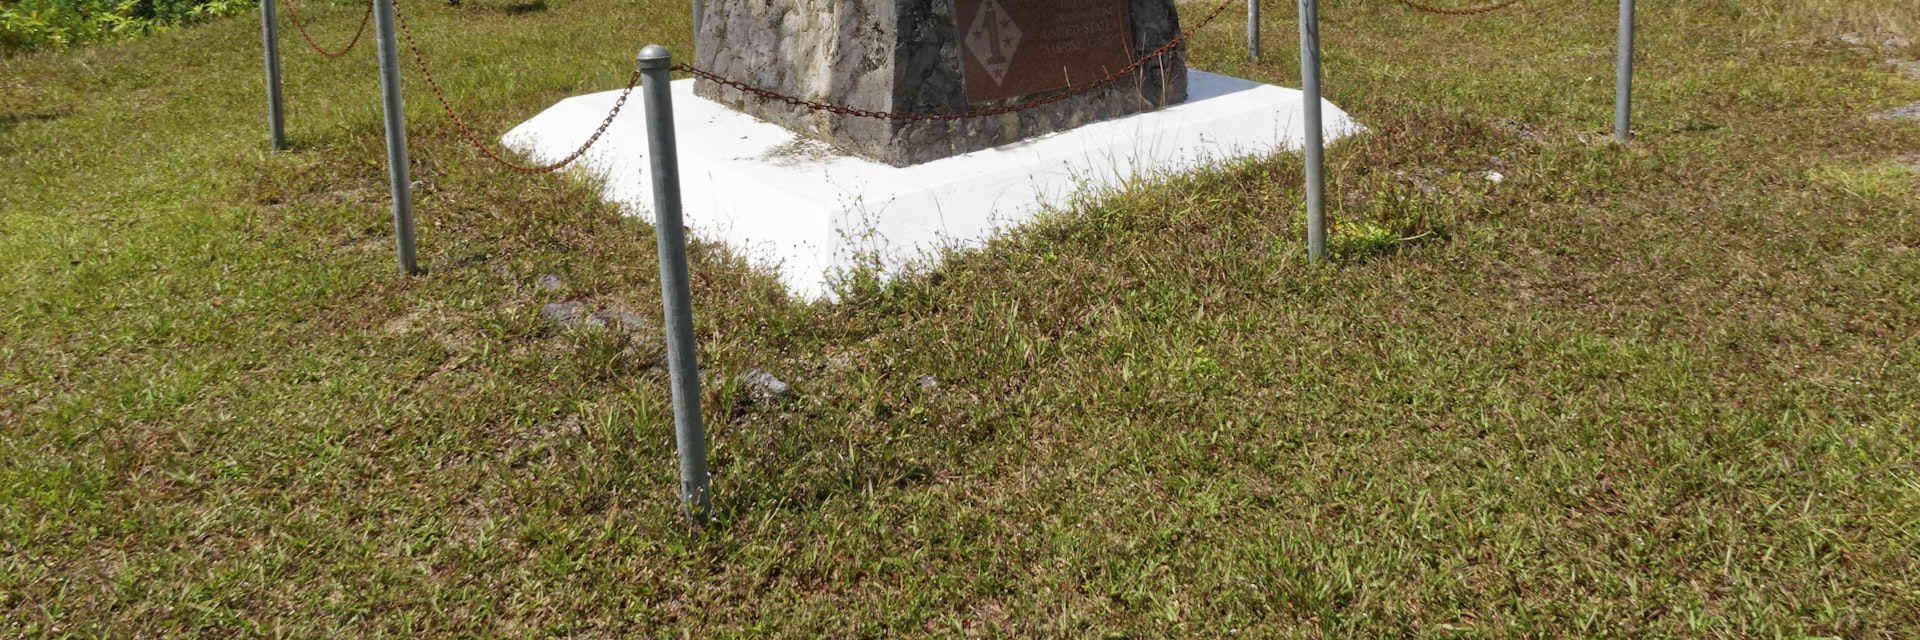 US Marine Corps Monument, Peleliu Island, Koror